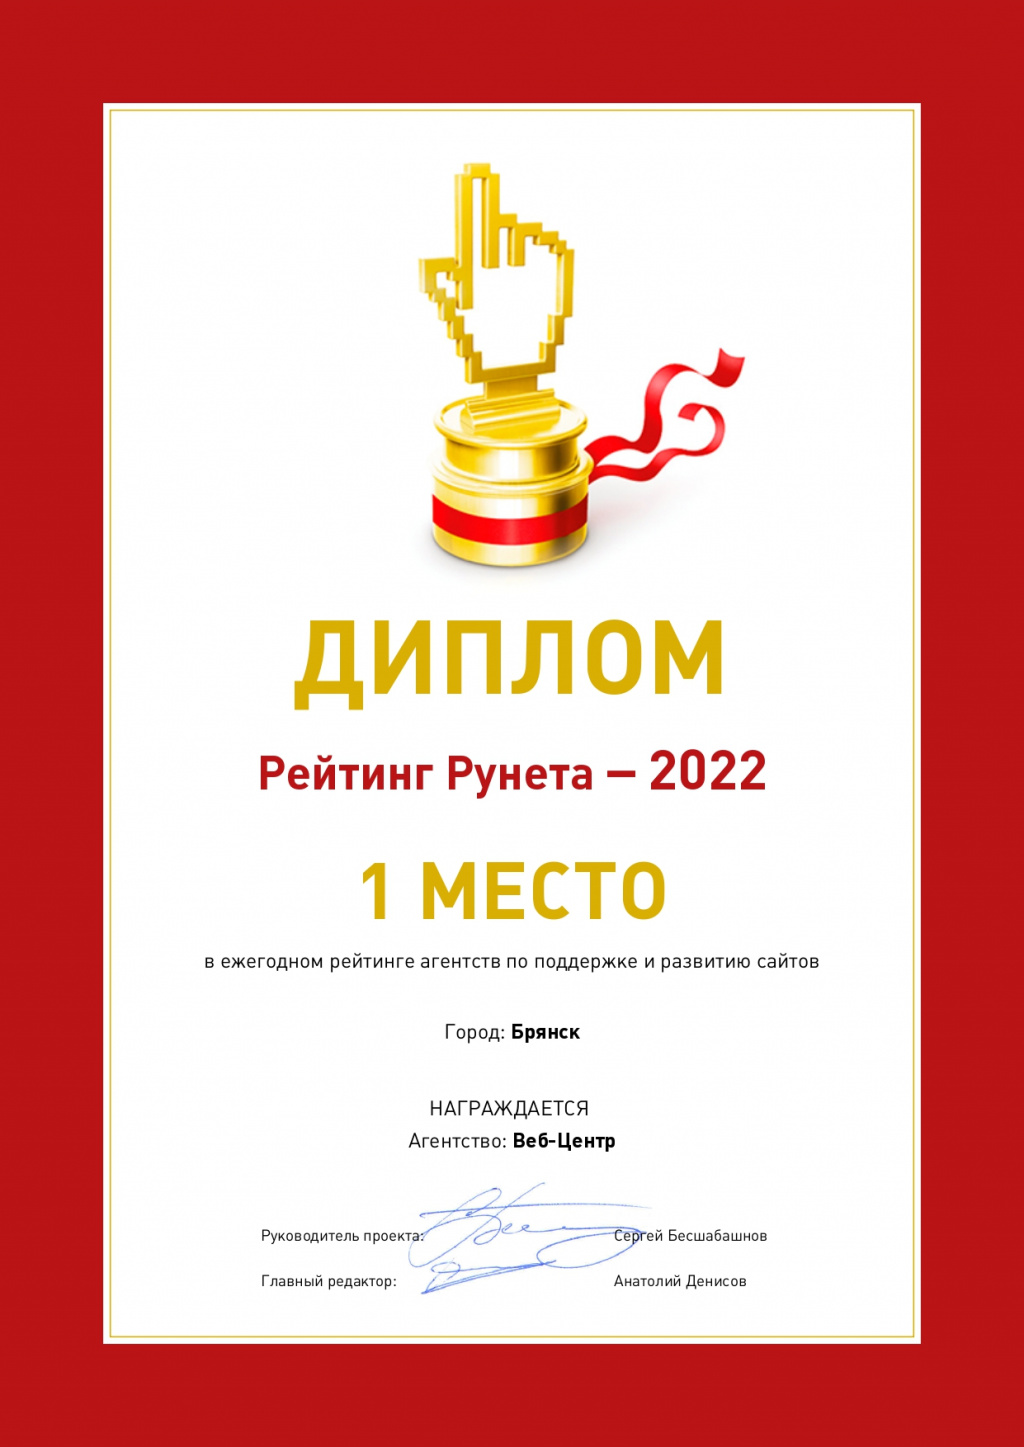 1 место в ежегодном рейтинге агентств по поддержке и развитию сайтов | Брянск